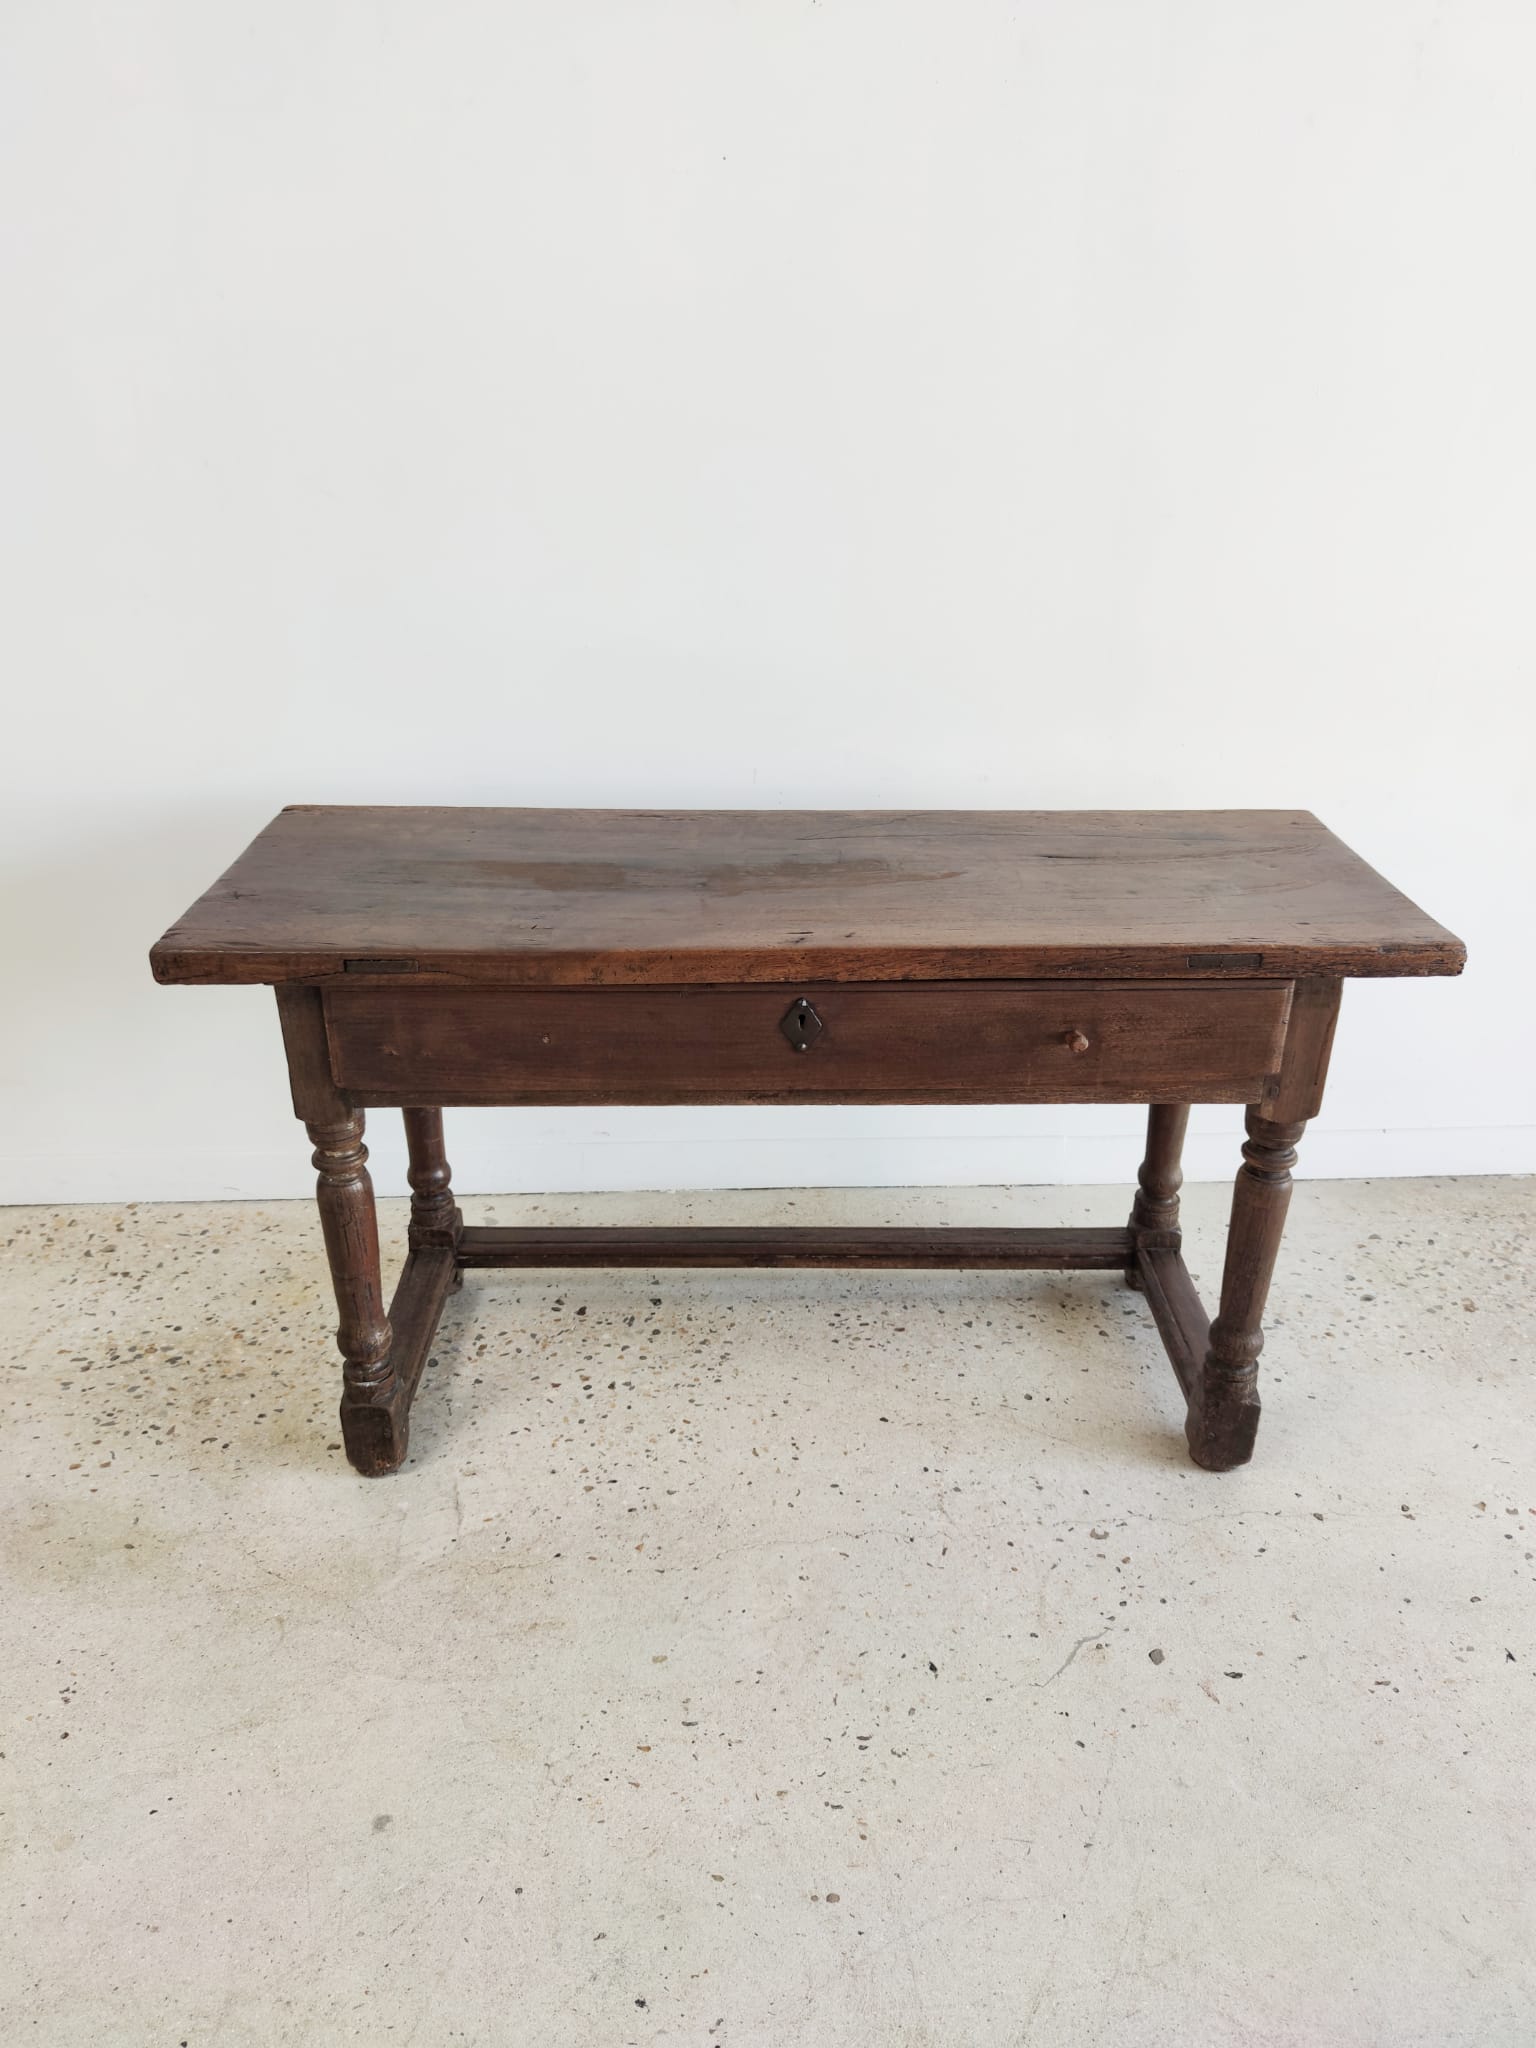 Ancienne table de ferme en chêne pouvant servir de bureau